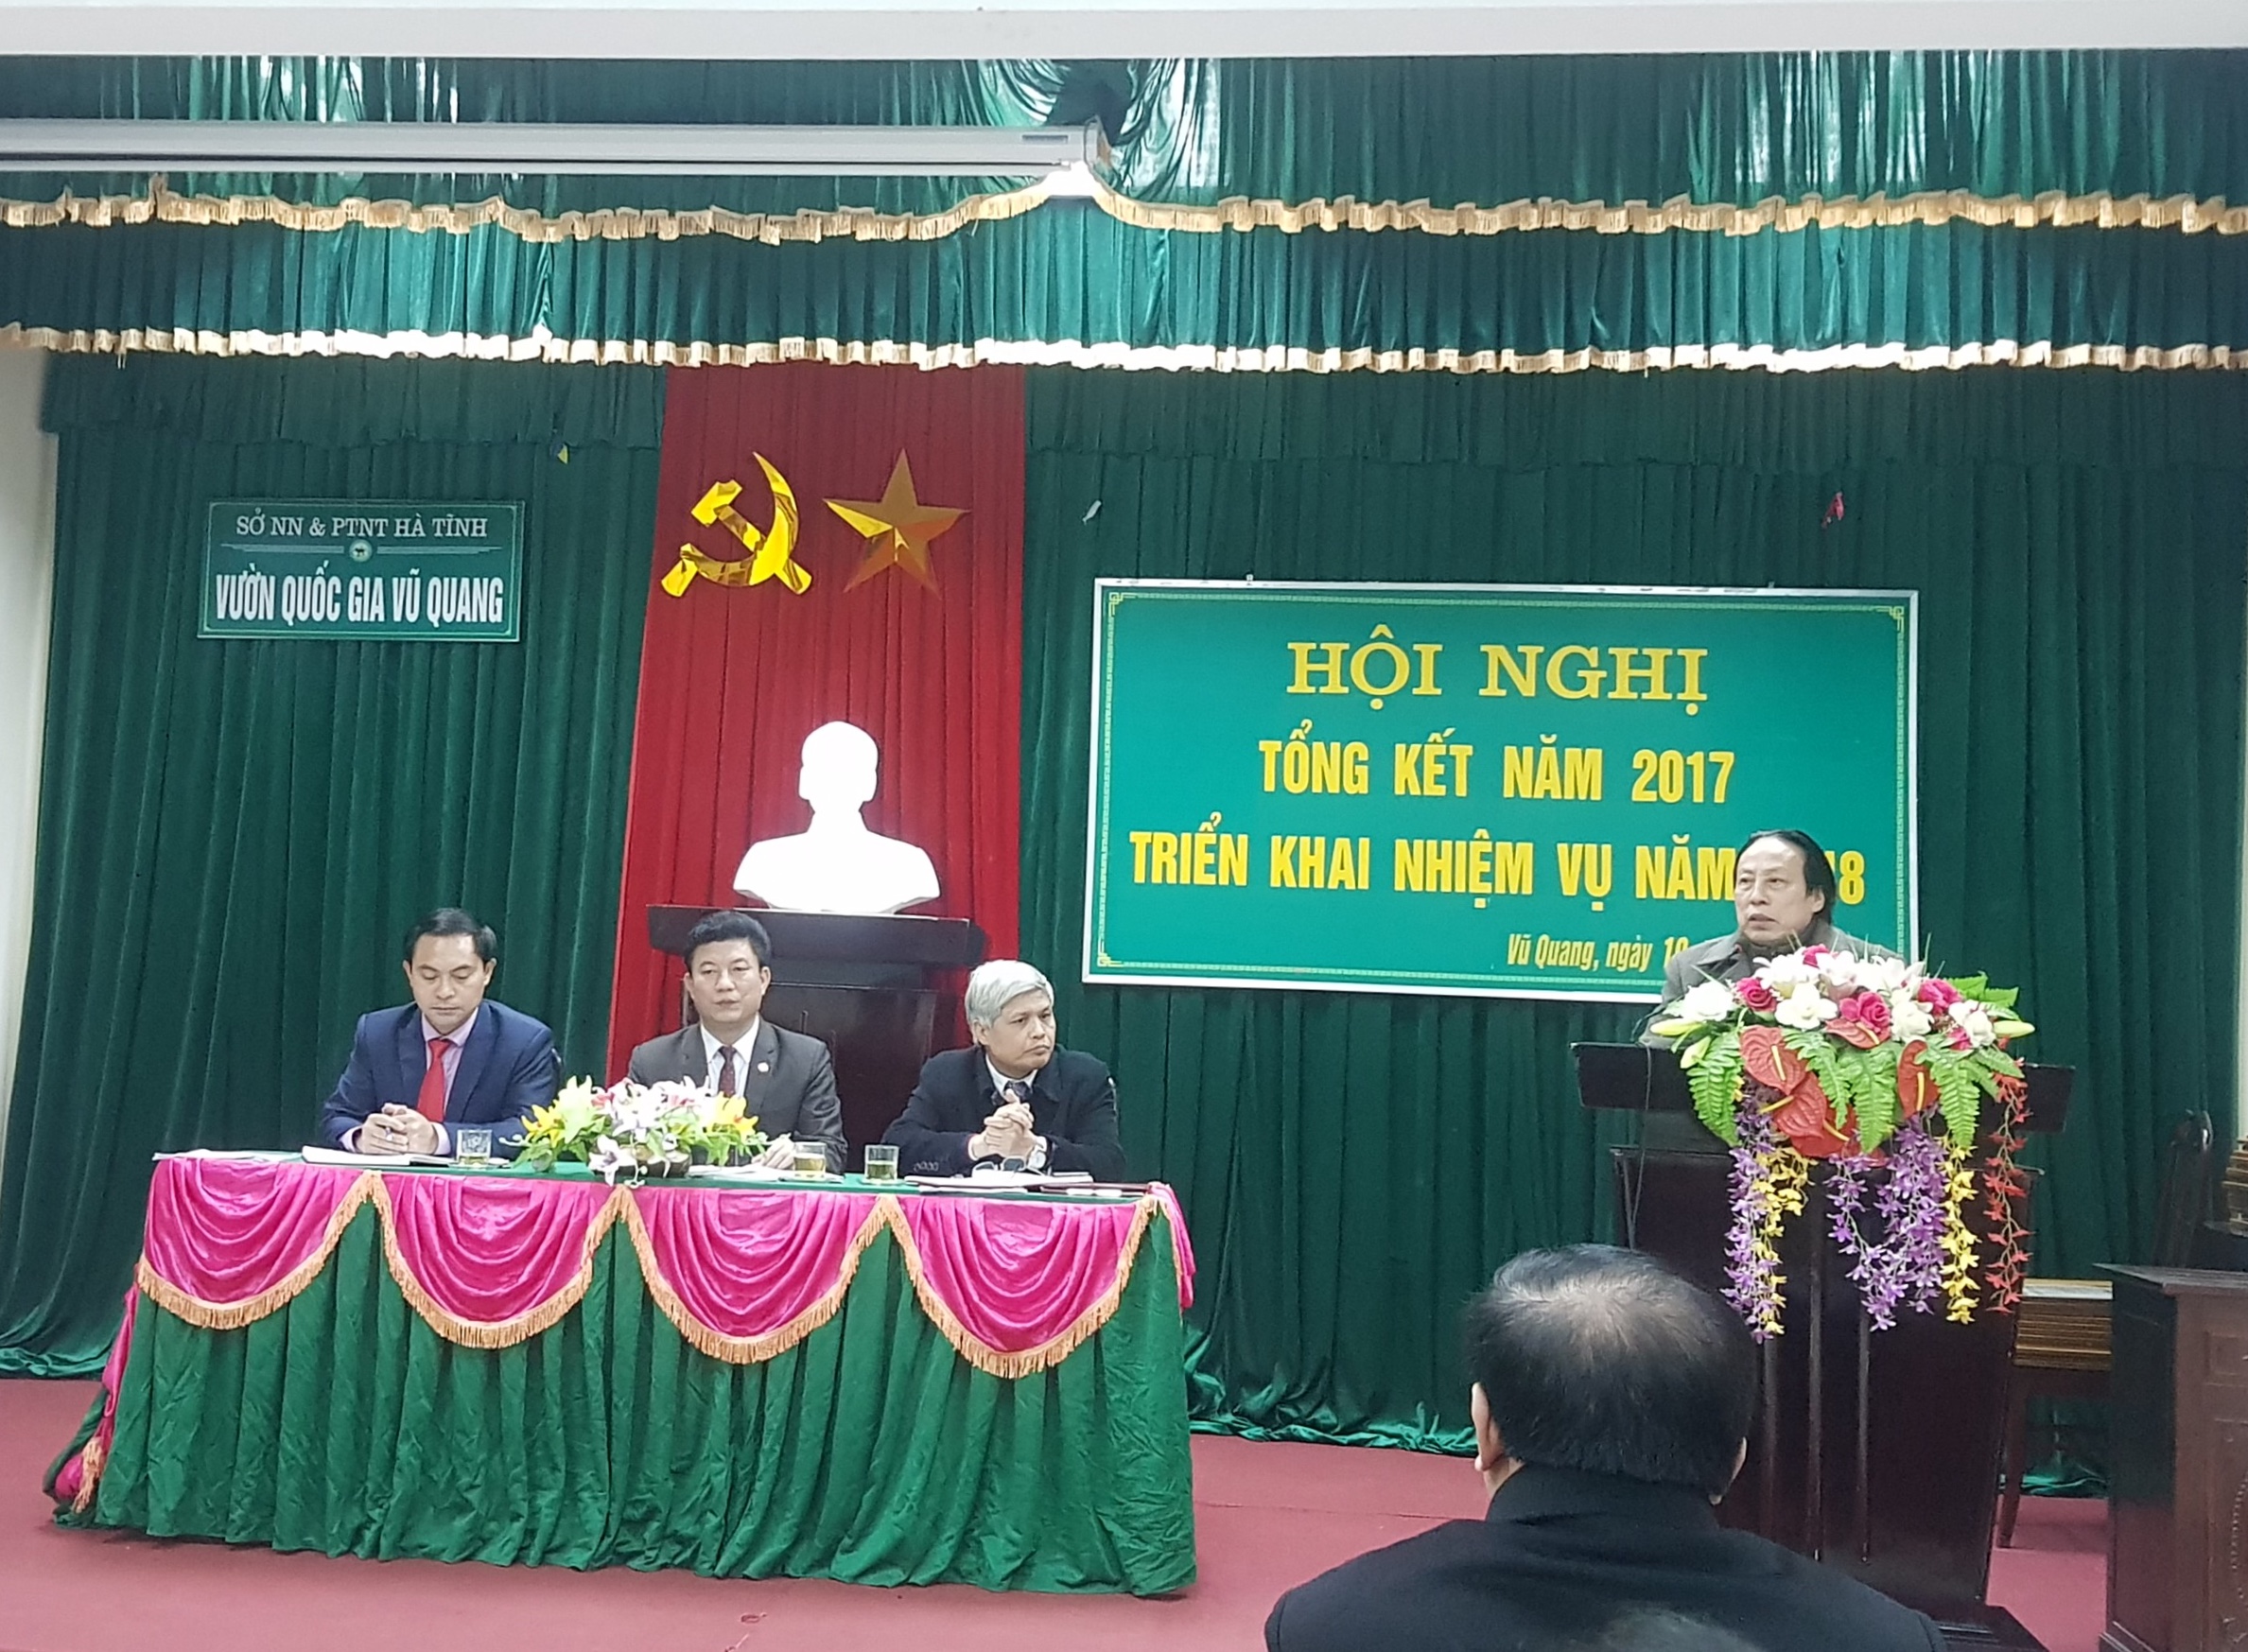 Vườn Quốc gia Vũ Quang tổ chức Hội nghị Tổng kết năm 2017, triển khai nhiệm vụ năm 2018